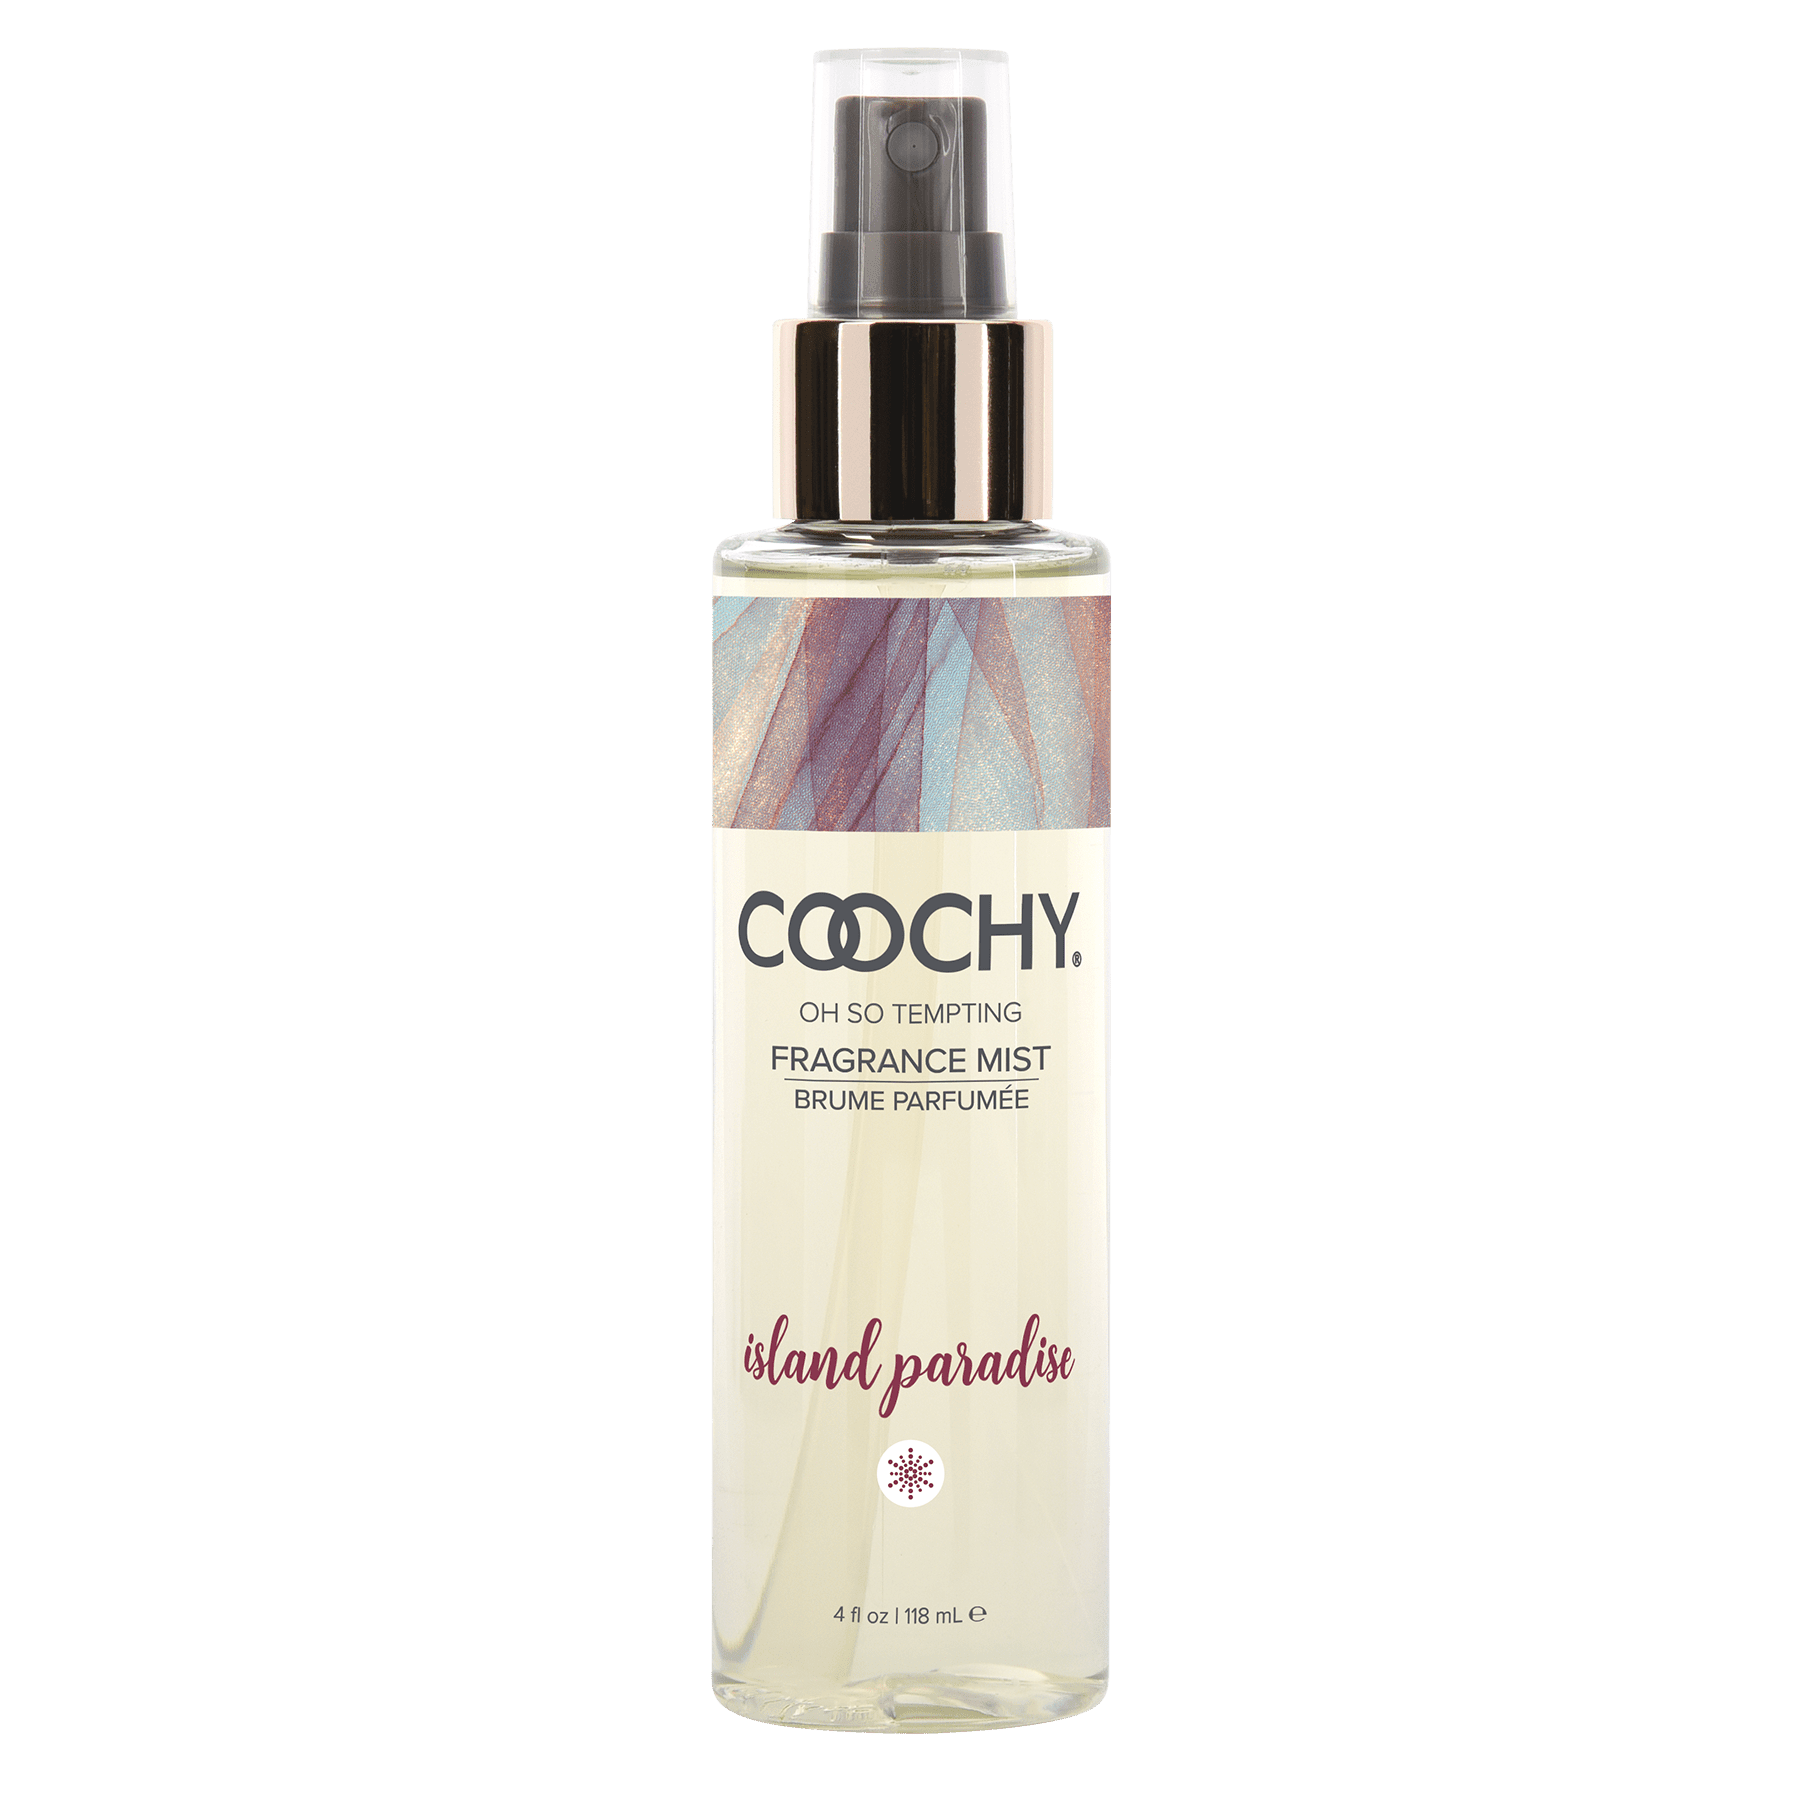 Coochy Fragrance Mist - 4 Oz (118 mL) - 7 scents available - CheapLubes.com